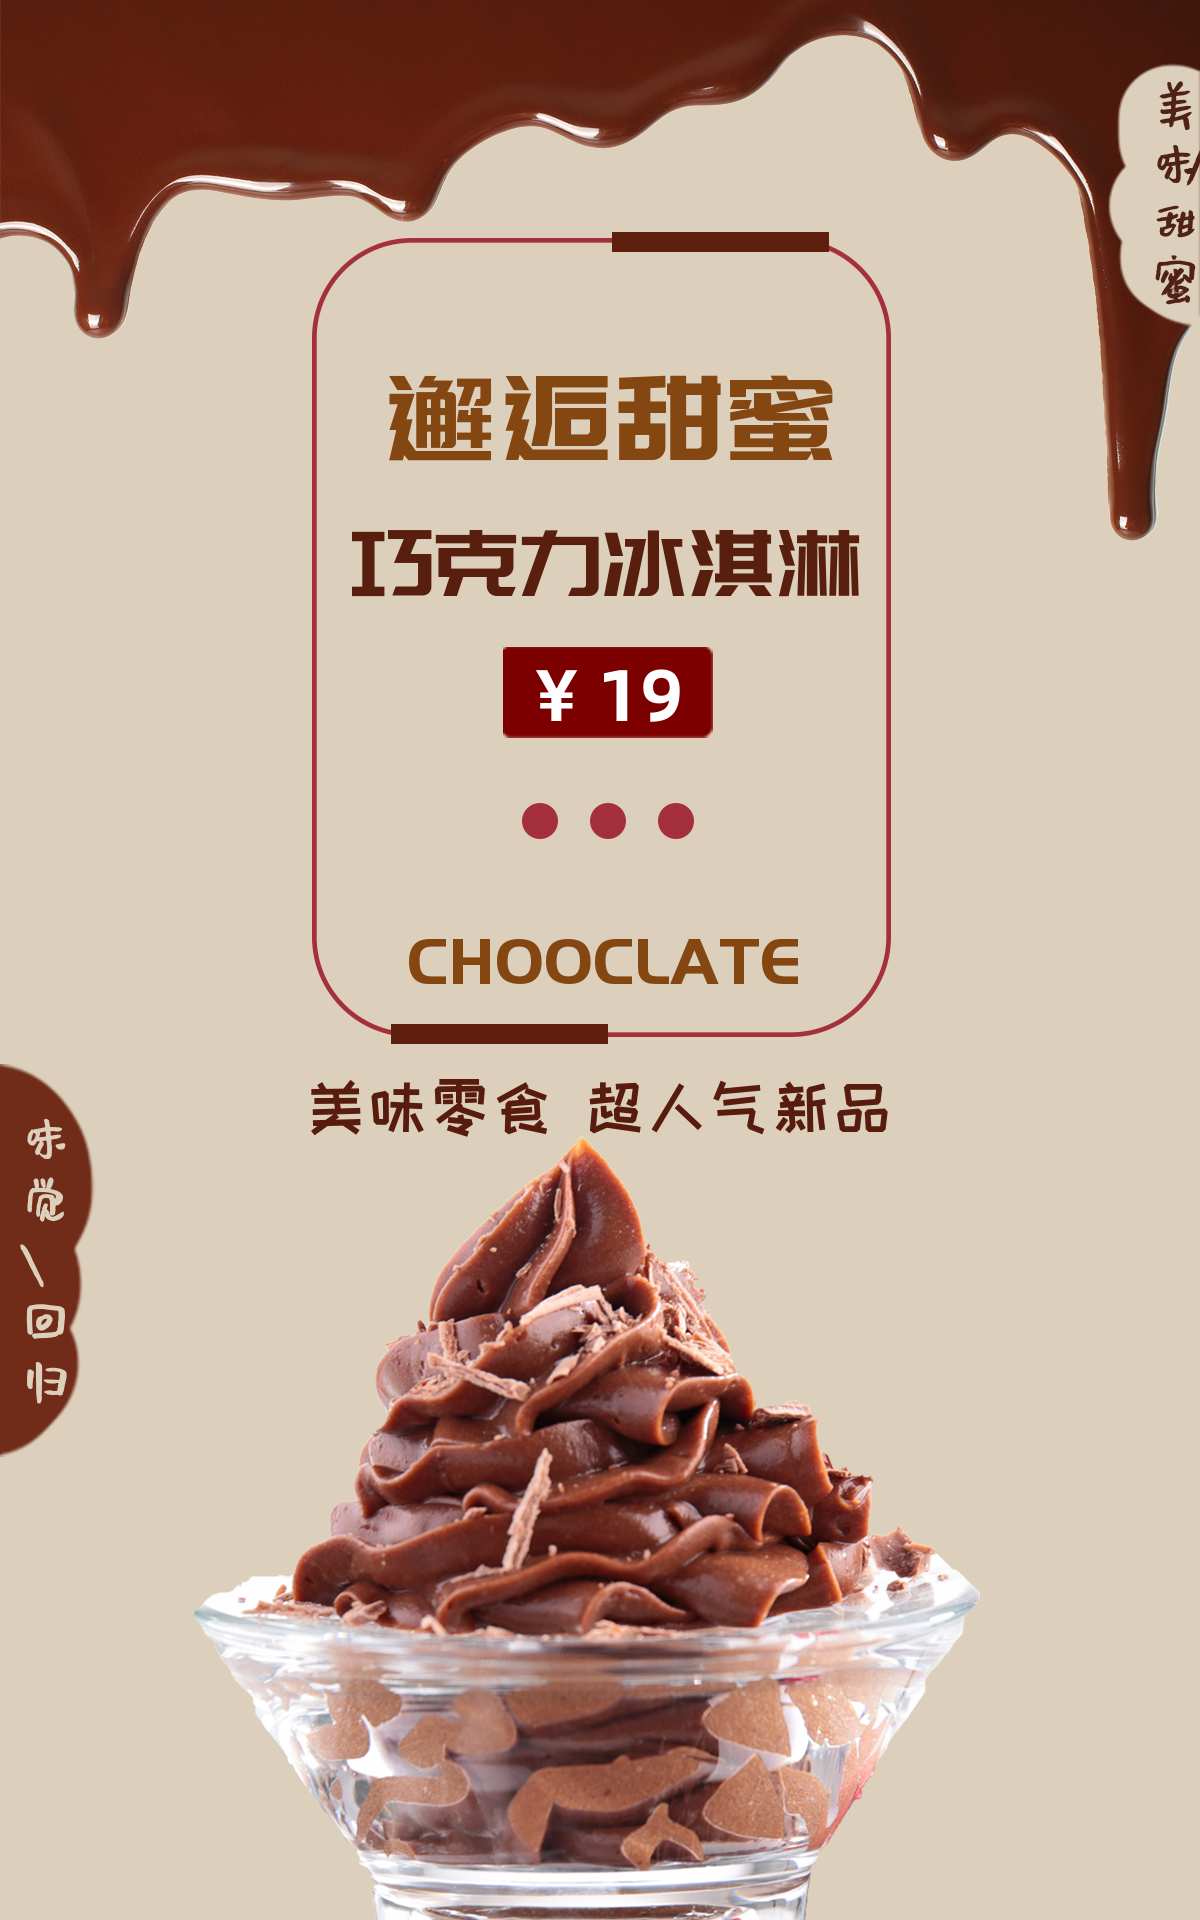 巧克力冰淇淋甜蜜邂逅-竖